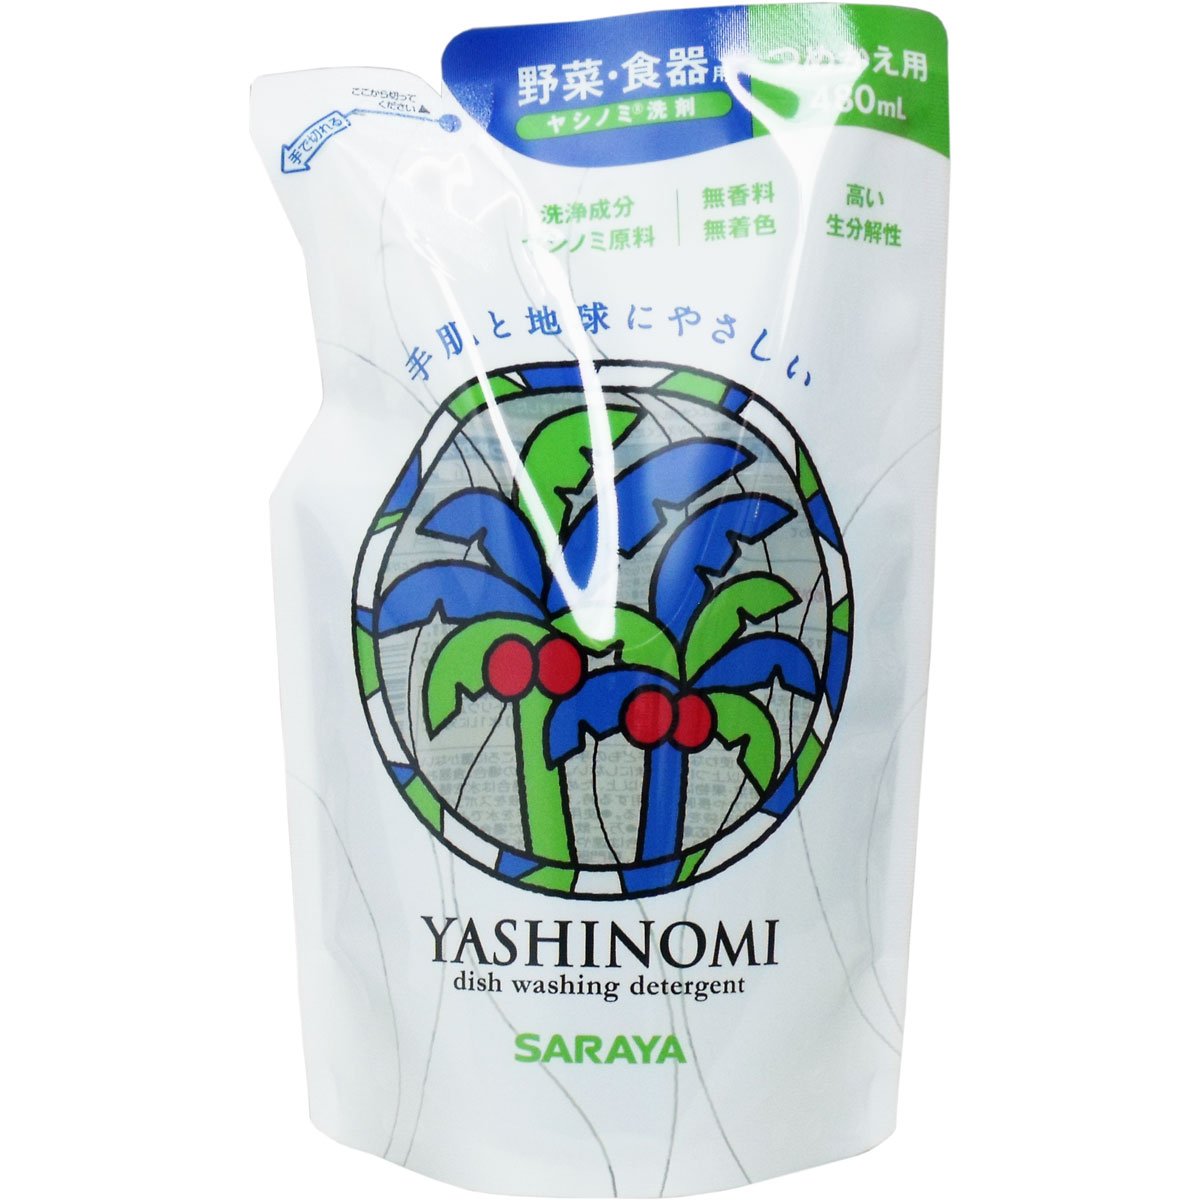 サラヤ ヤシノミ洗剤 480ML 詰替用 318730 00030577 まとめ買い5個セット